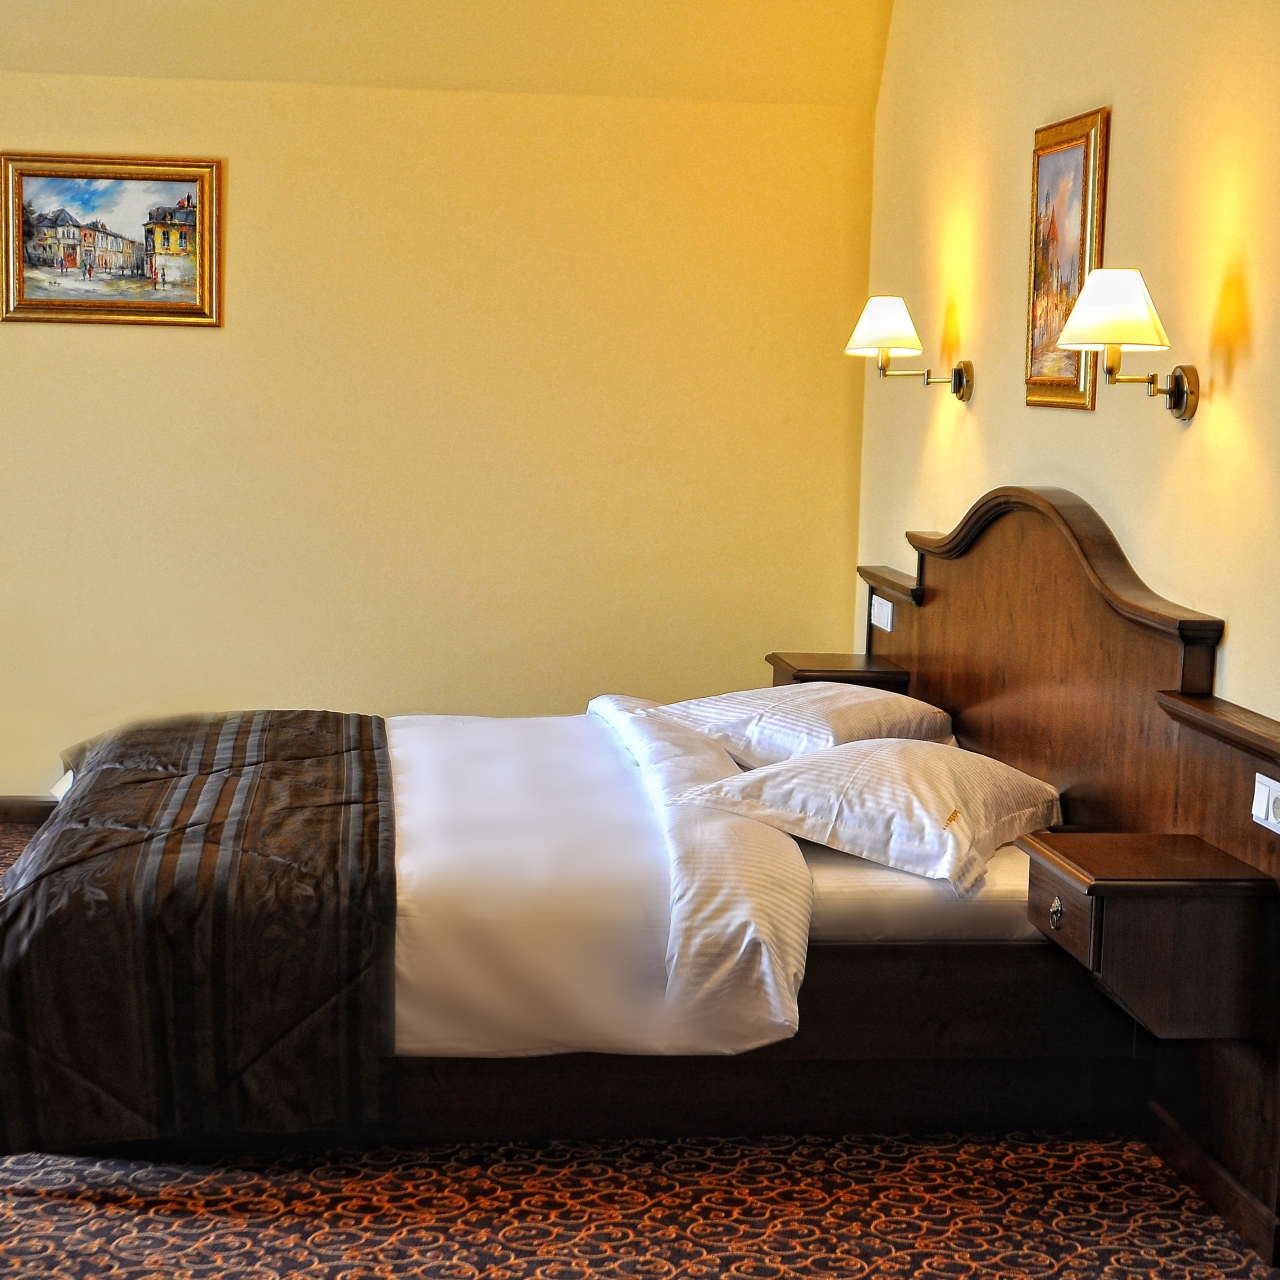 Cum găsești un loc de cazare în Sebeș ideal pentru întreaga familie?